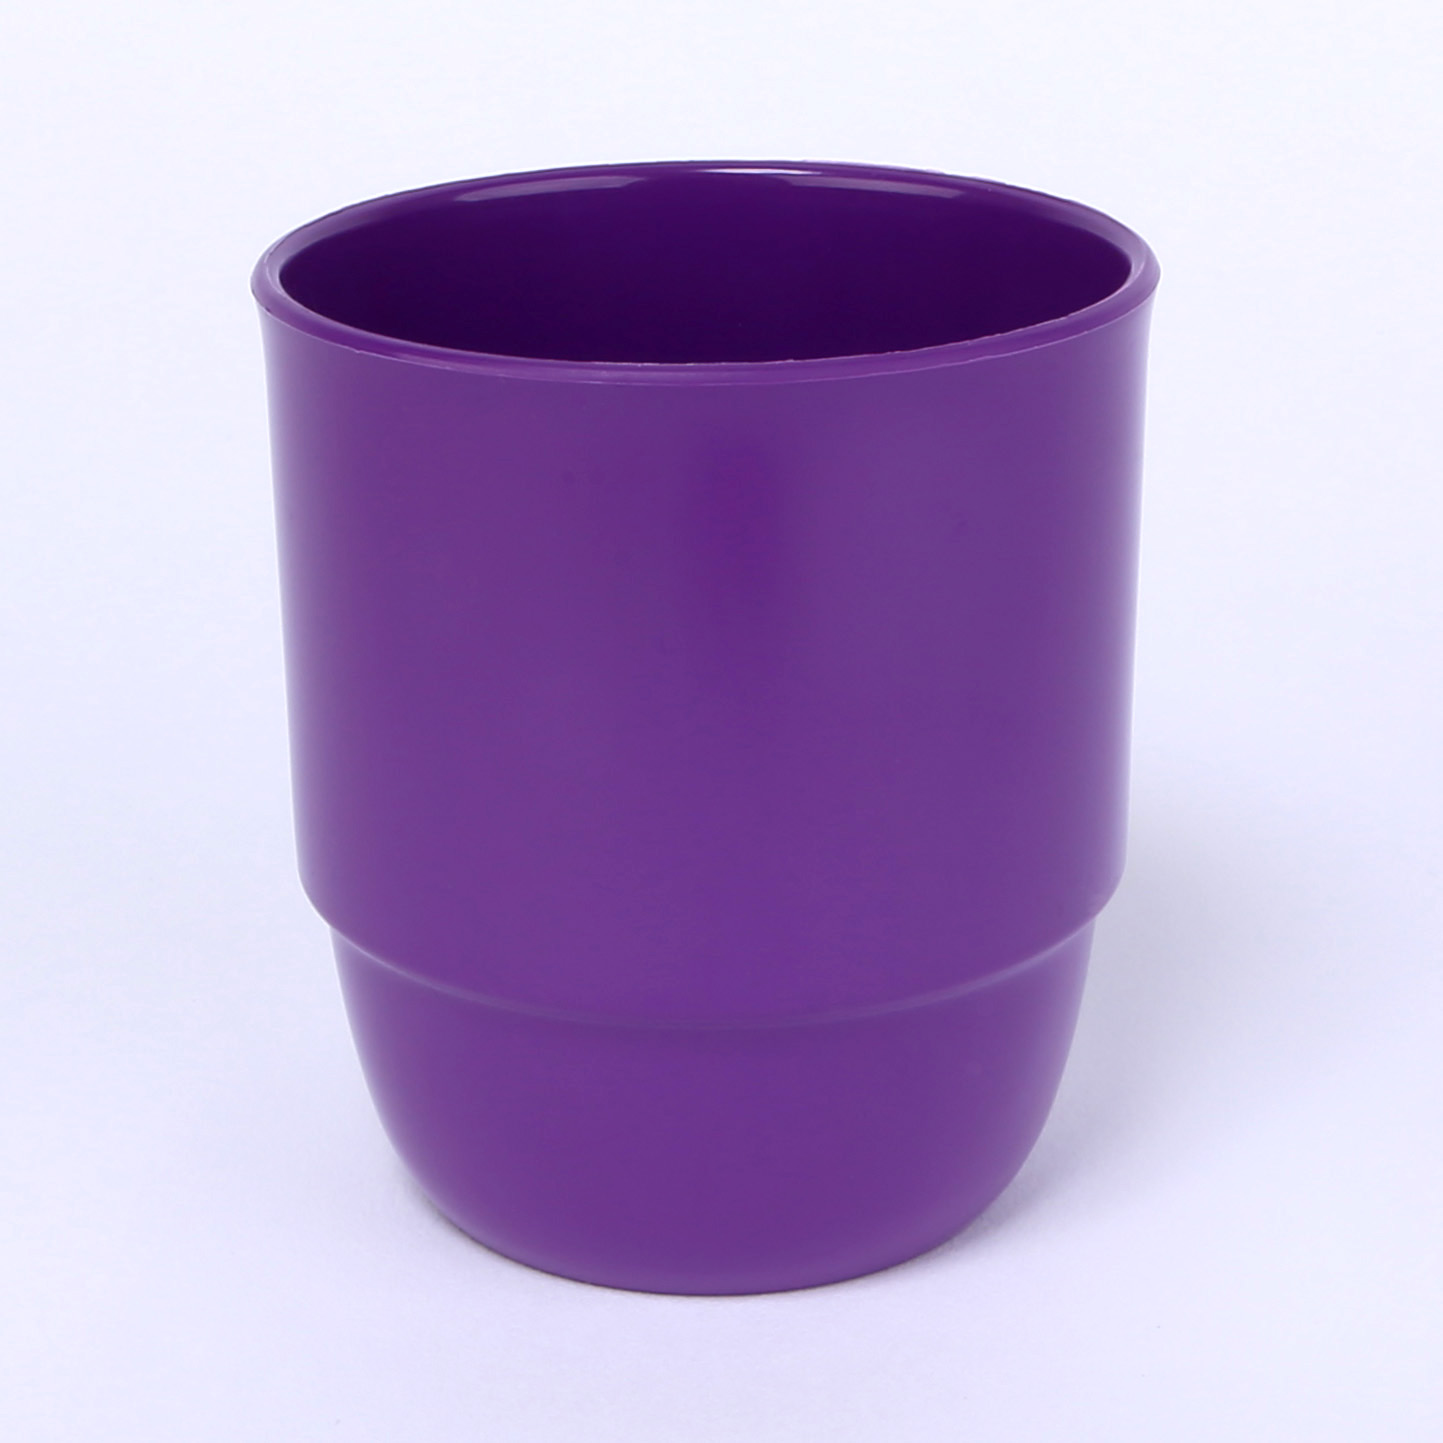 vaLon Zephyr Trinkbecher ohne Henkel 0,25 L aus schadstofffreiem Kunststoff in der Farbe lila.